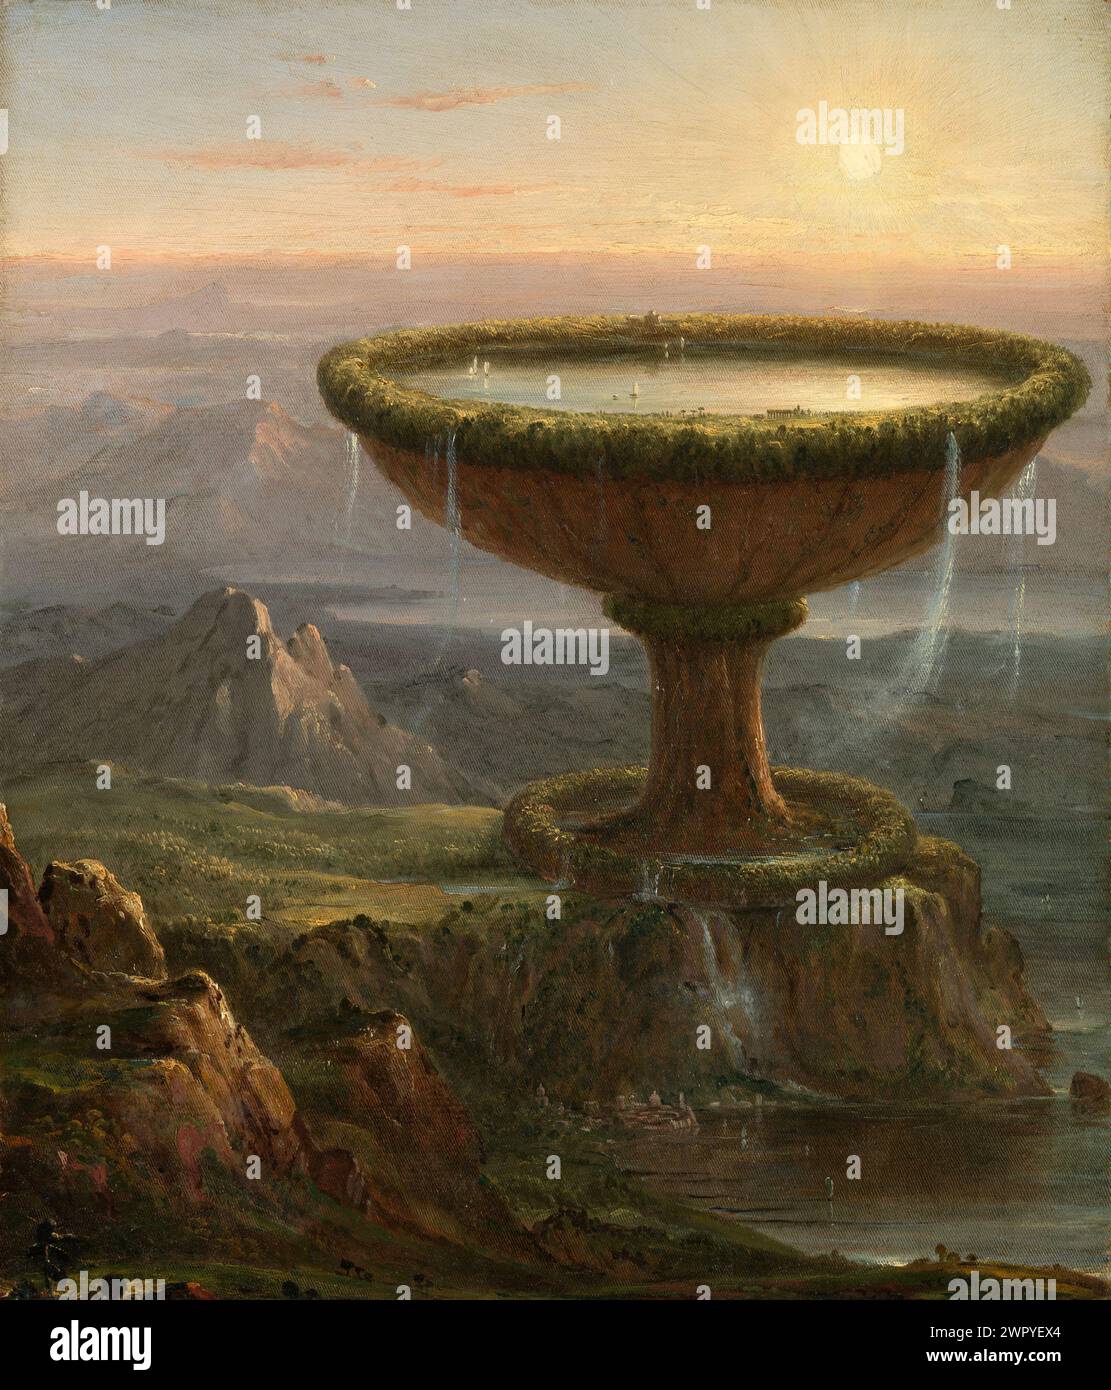 Pintura al óleo del artista estadounidense Thomas Cole, fundador de la Escuela de Arte del Río Hudson, The Titan's Goblet Ca. 1833 Foto de stock